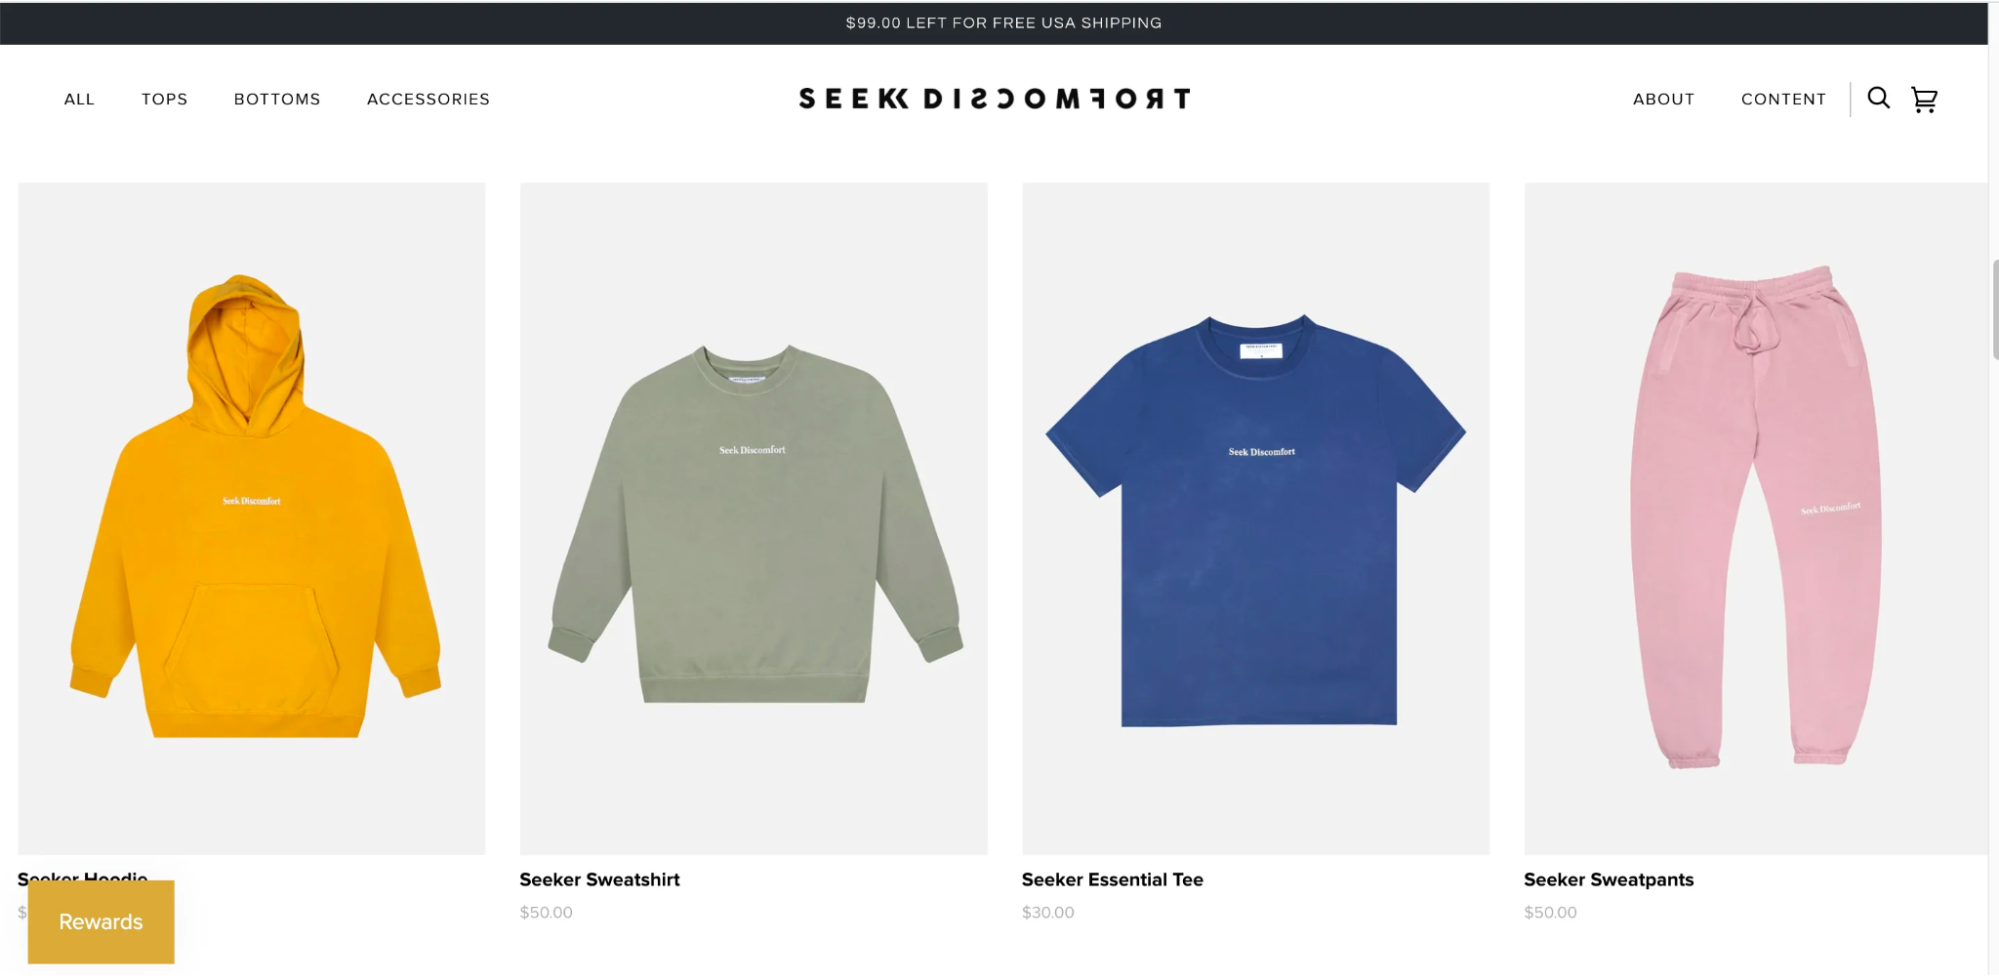 The Seek Discomfort网站上颜色鲜艳的T恤，运动衫和裤子